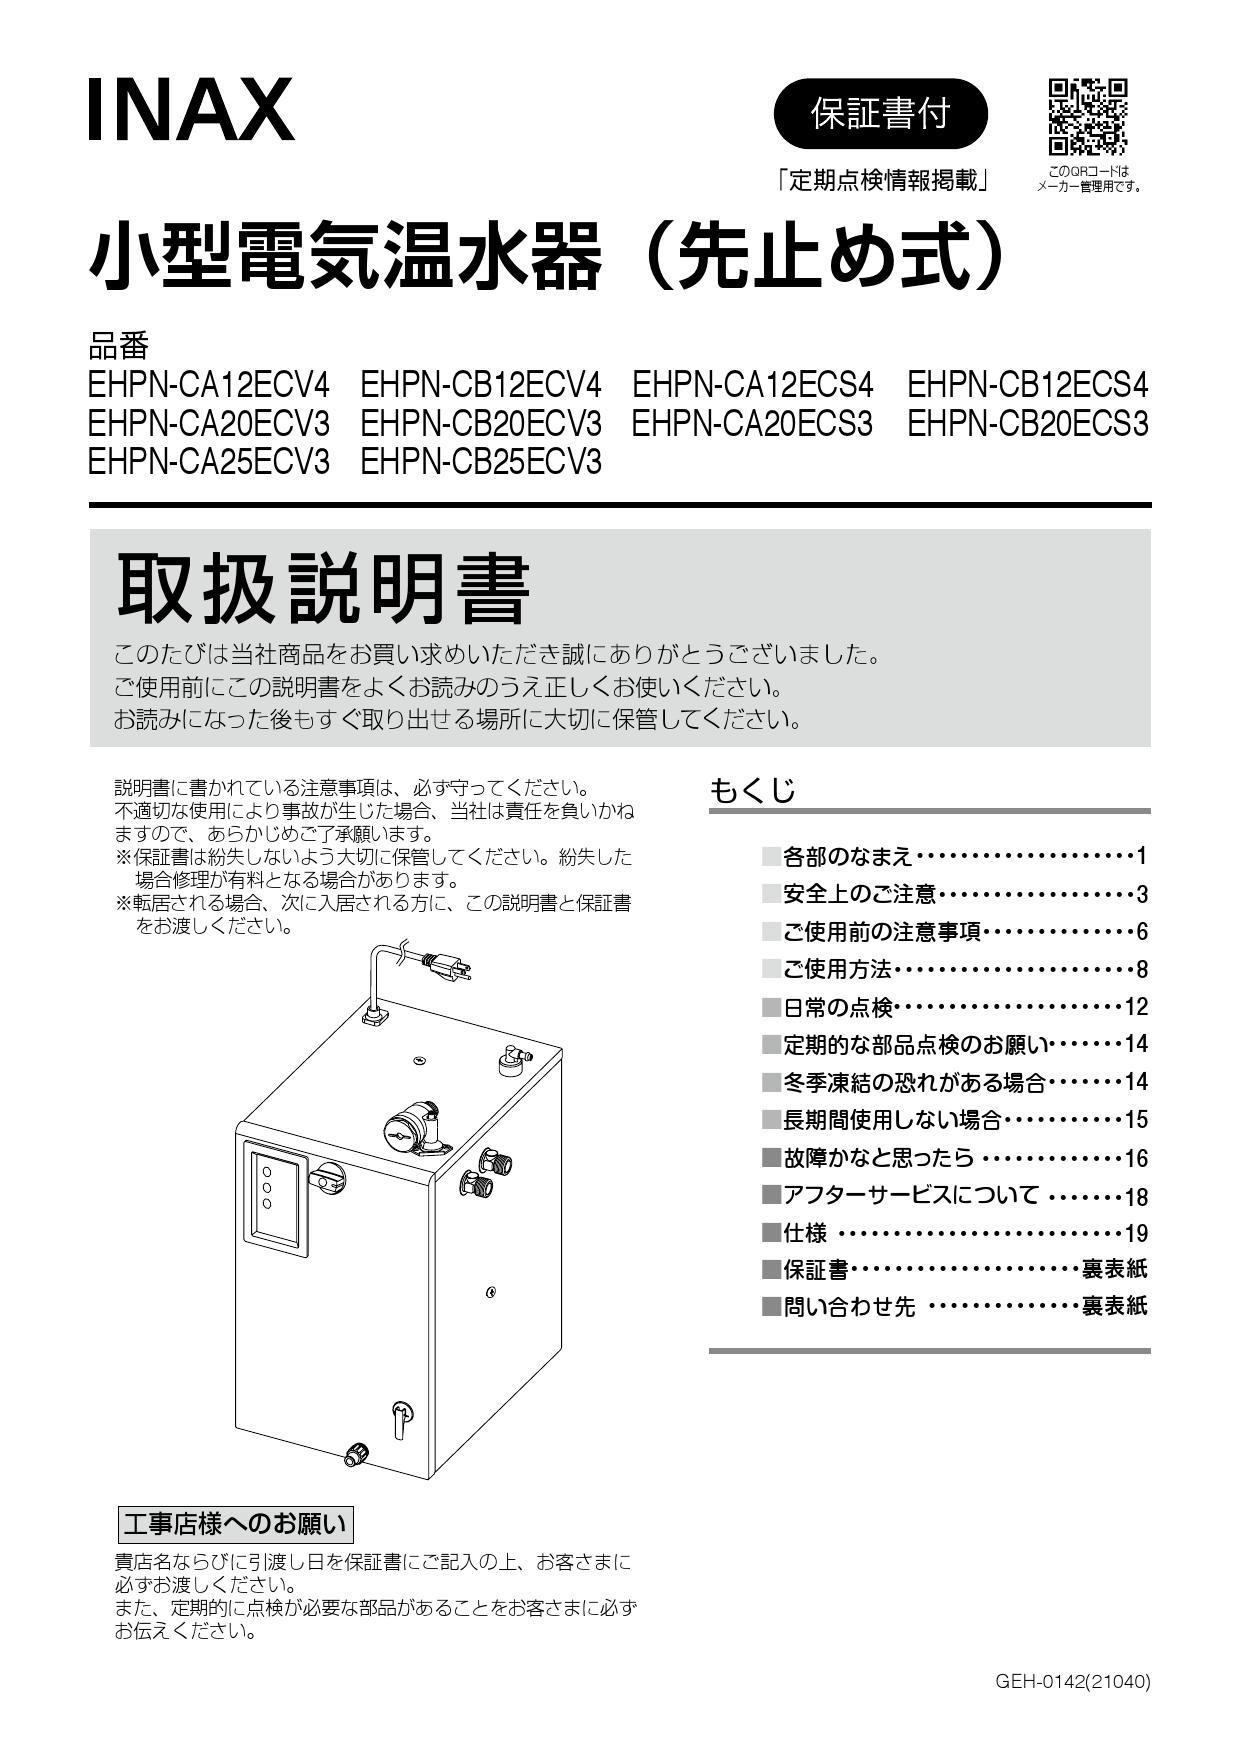 EHPN-CB12ECV1 200Vタイプ INAX・LIXIL 給湯器 小型電気温水器 出湯温度可変12Lタイプ(スーパー節電タイプ) 連続使用人数：50人 パブリック向け - 2